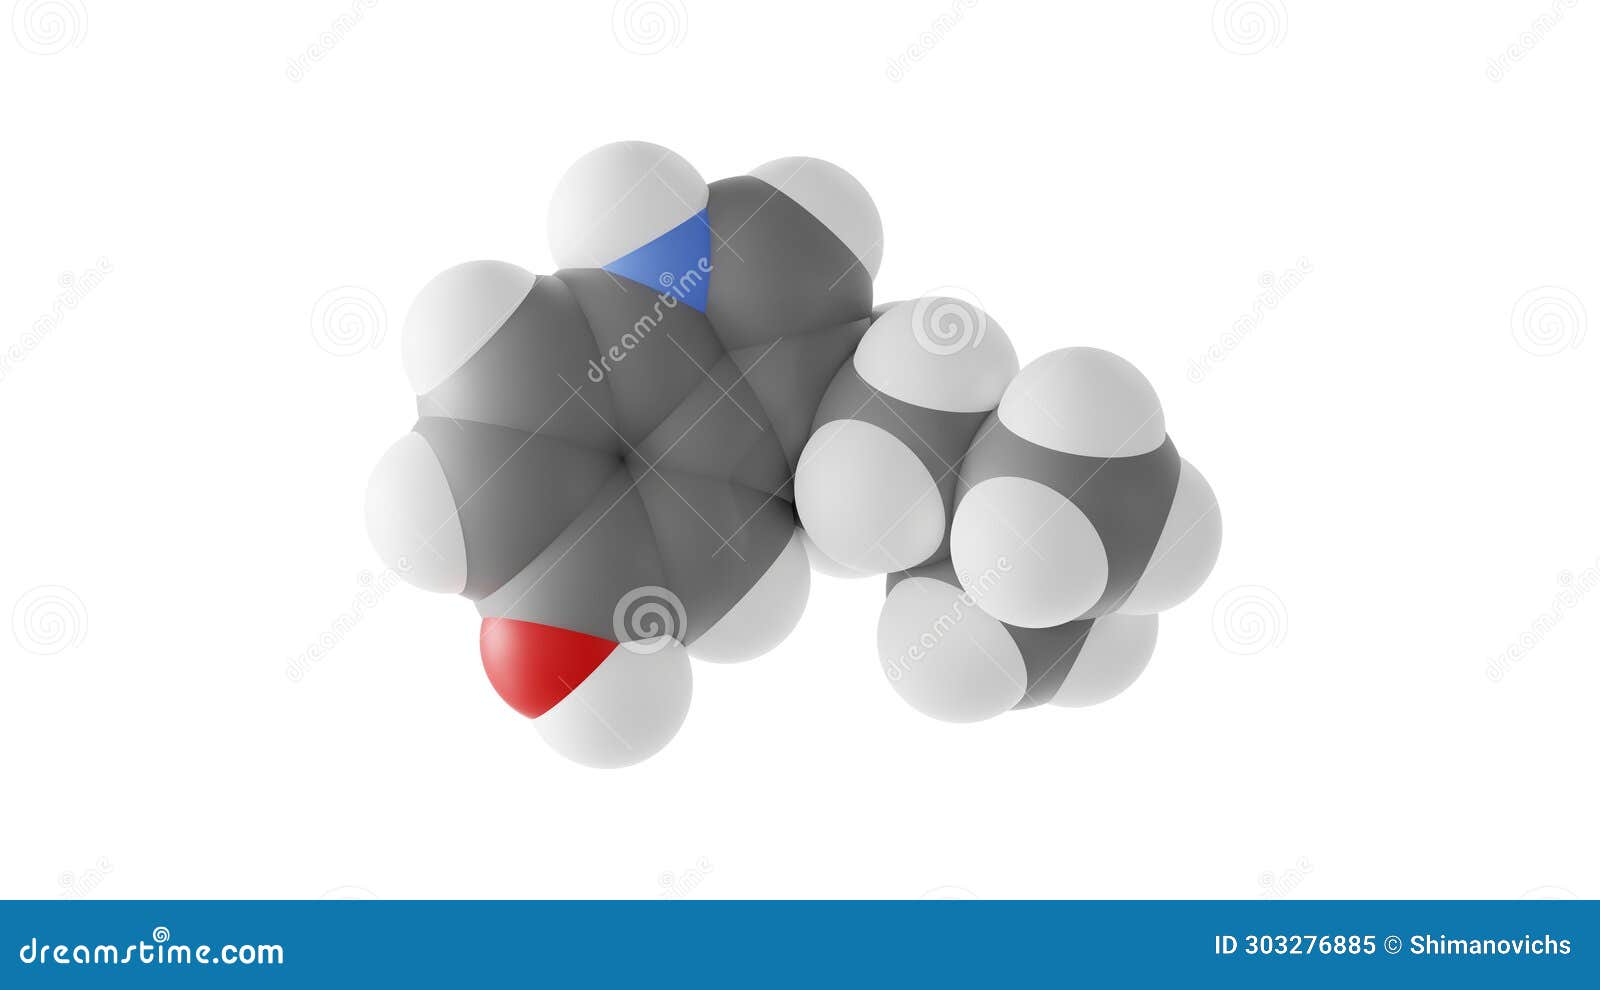 bufotenin molecule, tryptamine derivative, molecular structure,  3d model van der waals